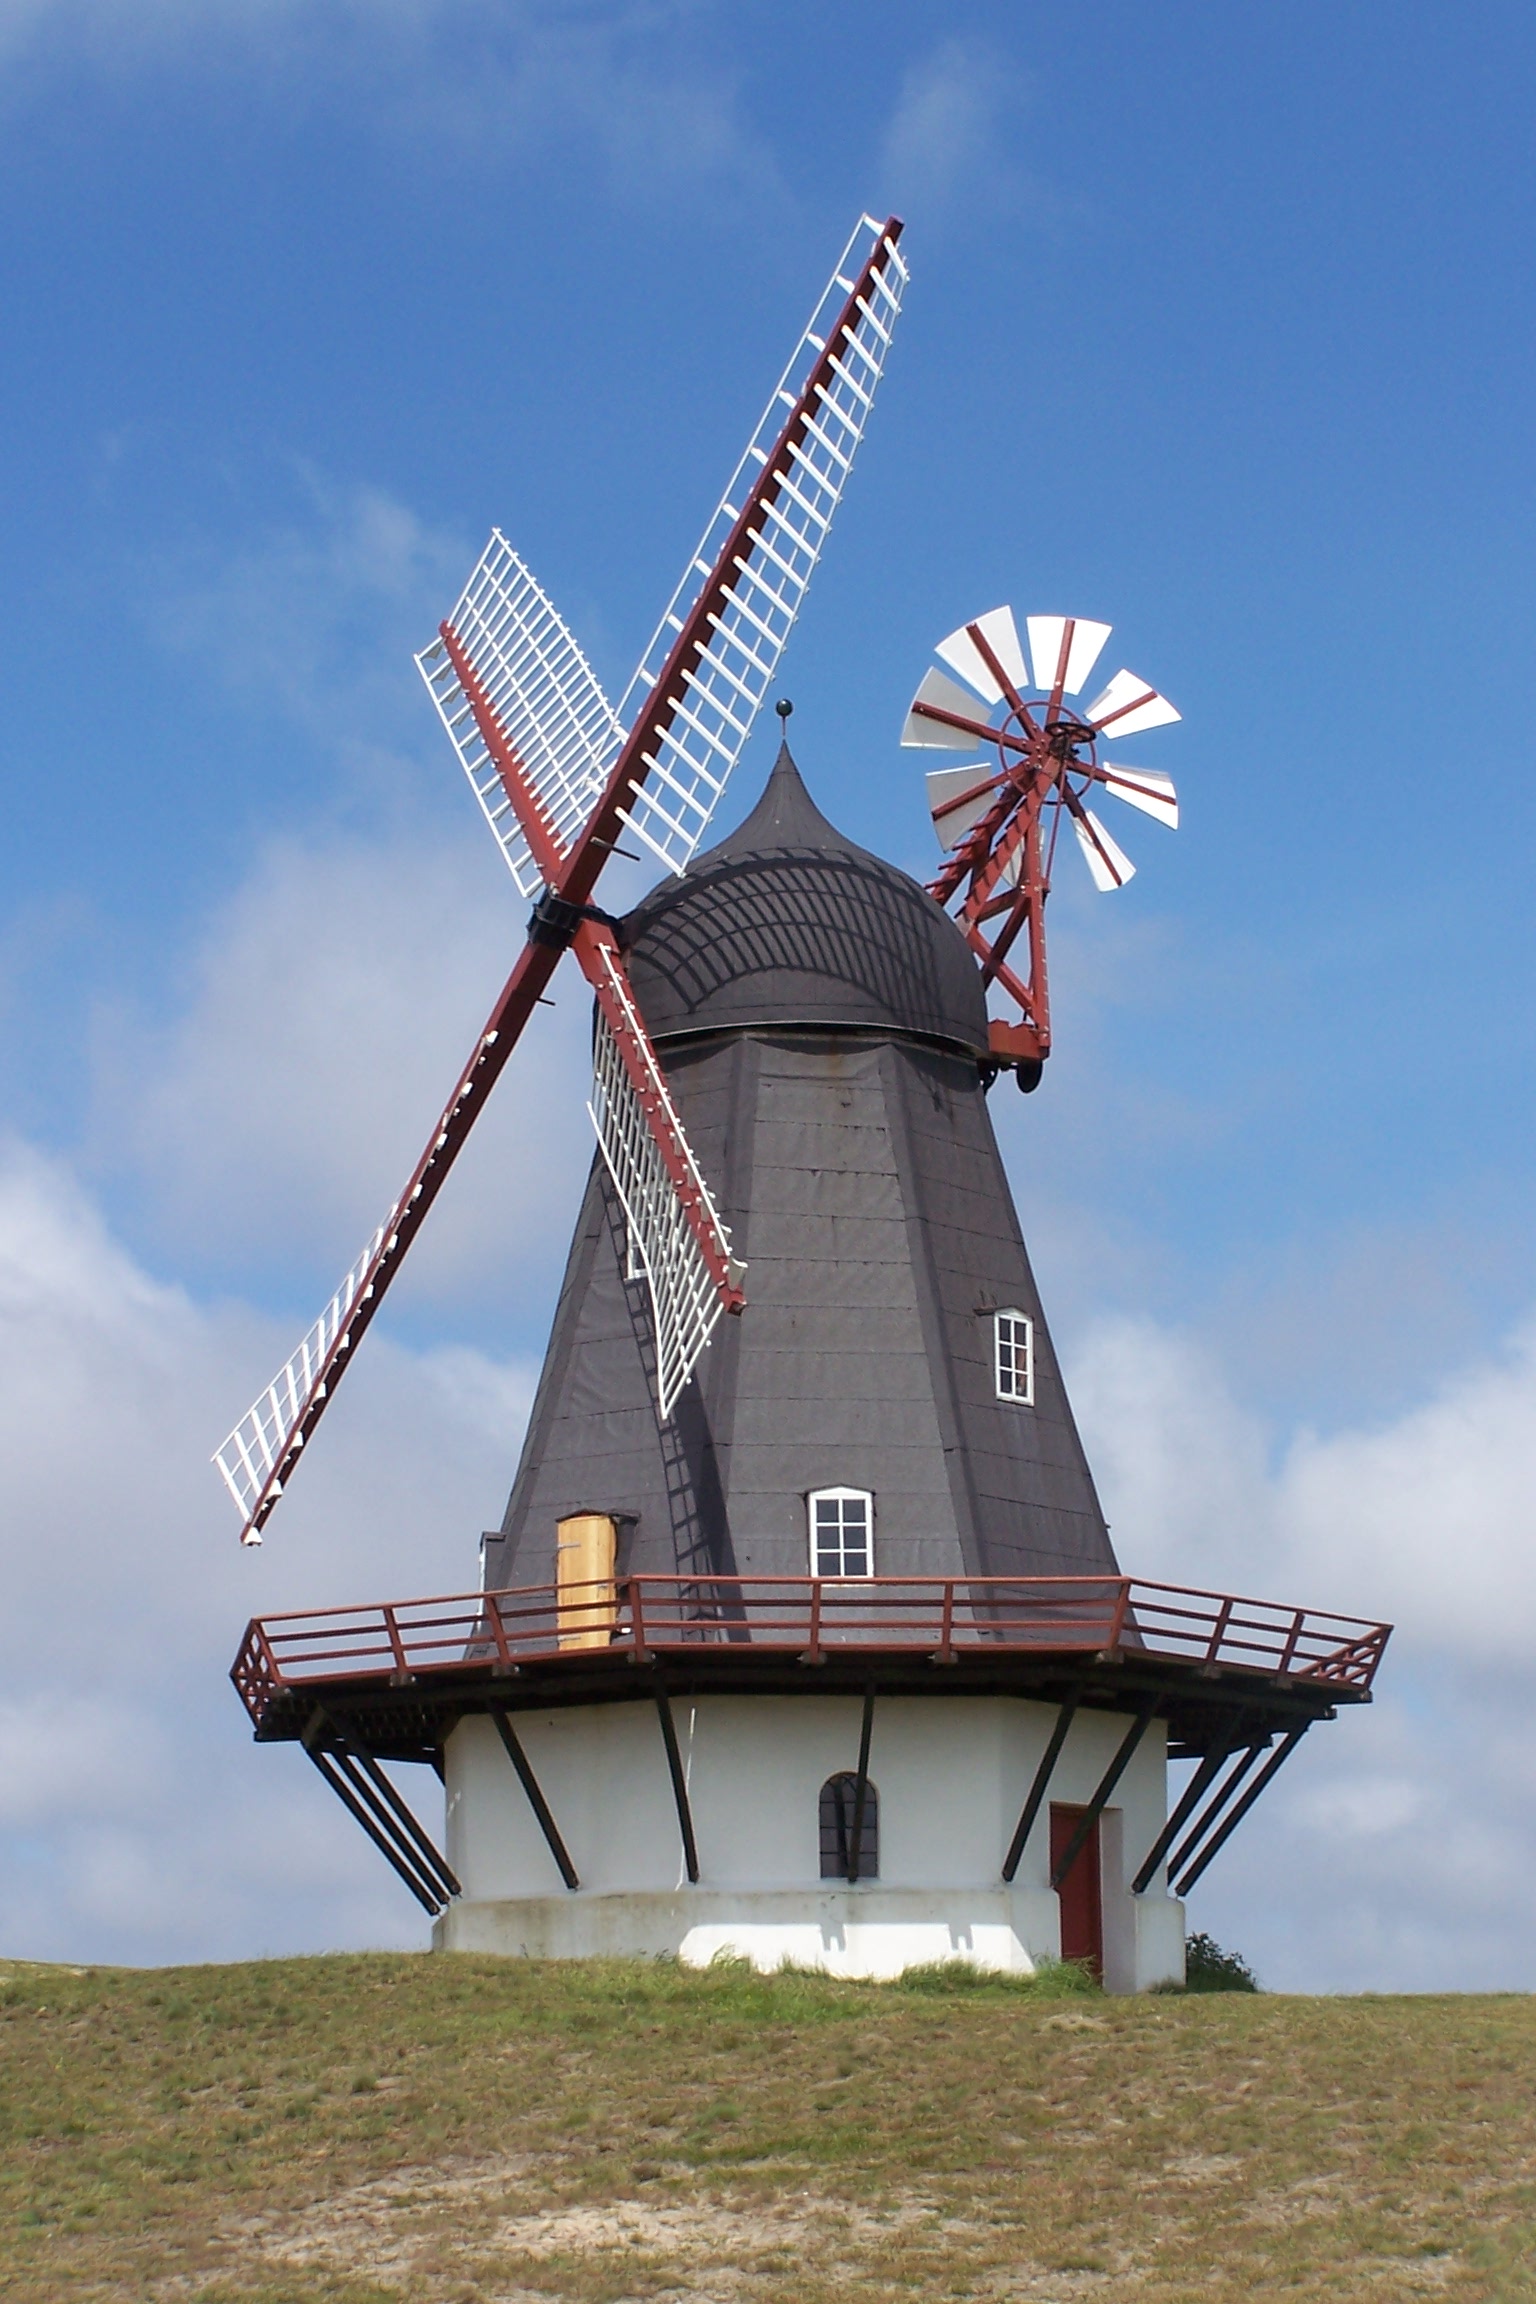 File:DK Fanoe Windmill01.JPG - Wikimedia Commons